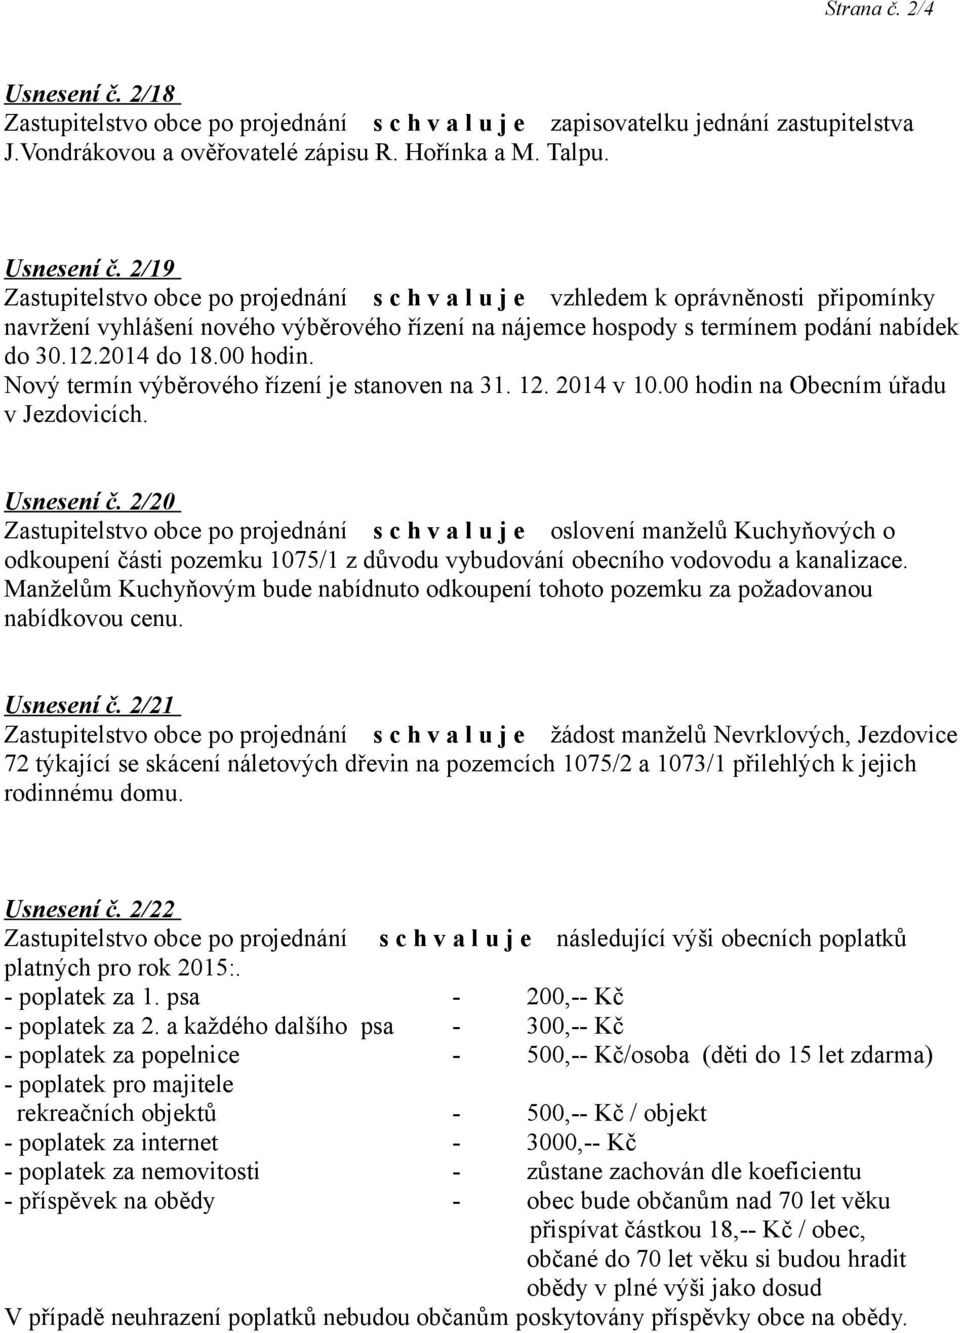 2/20 oslovení manželů Kuchyňových o odkoupení části pozemku 1075/1 z důvodu vybudování obecního vodovodu a kanalizace.